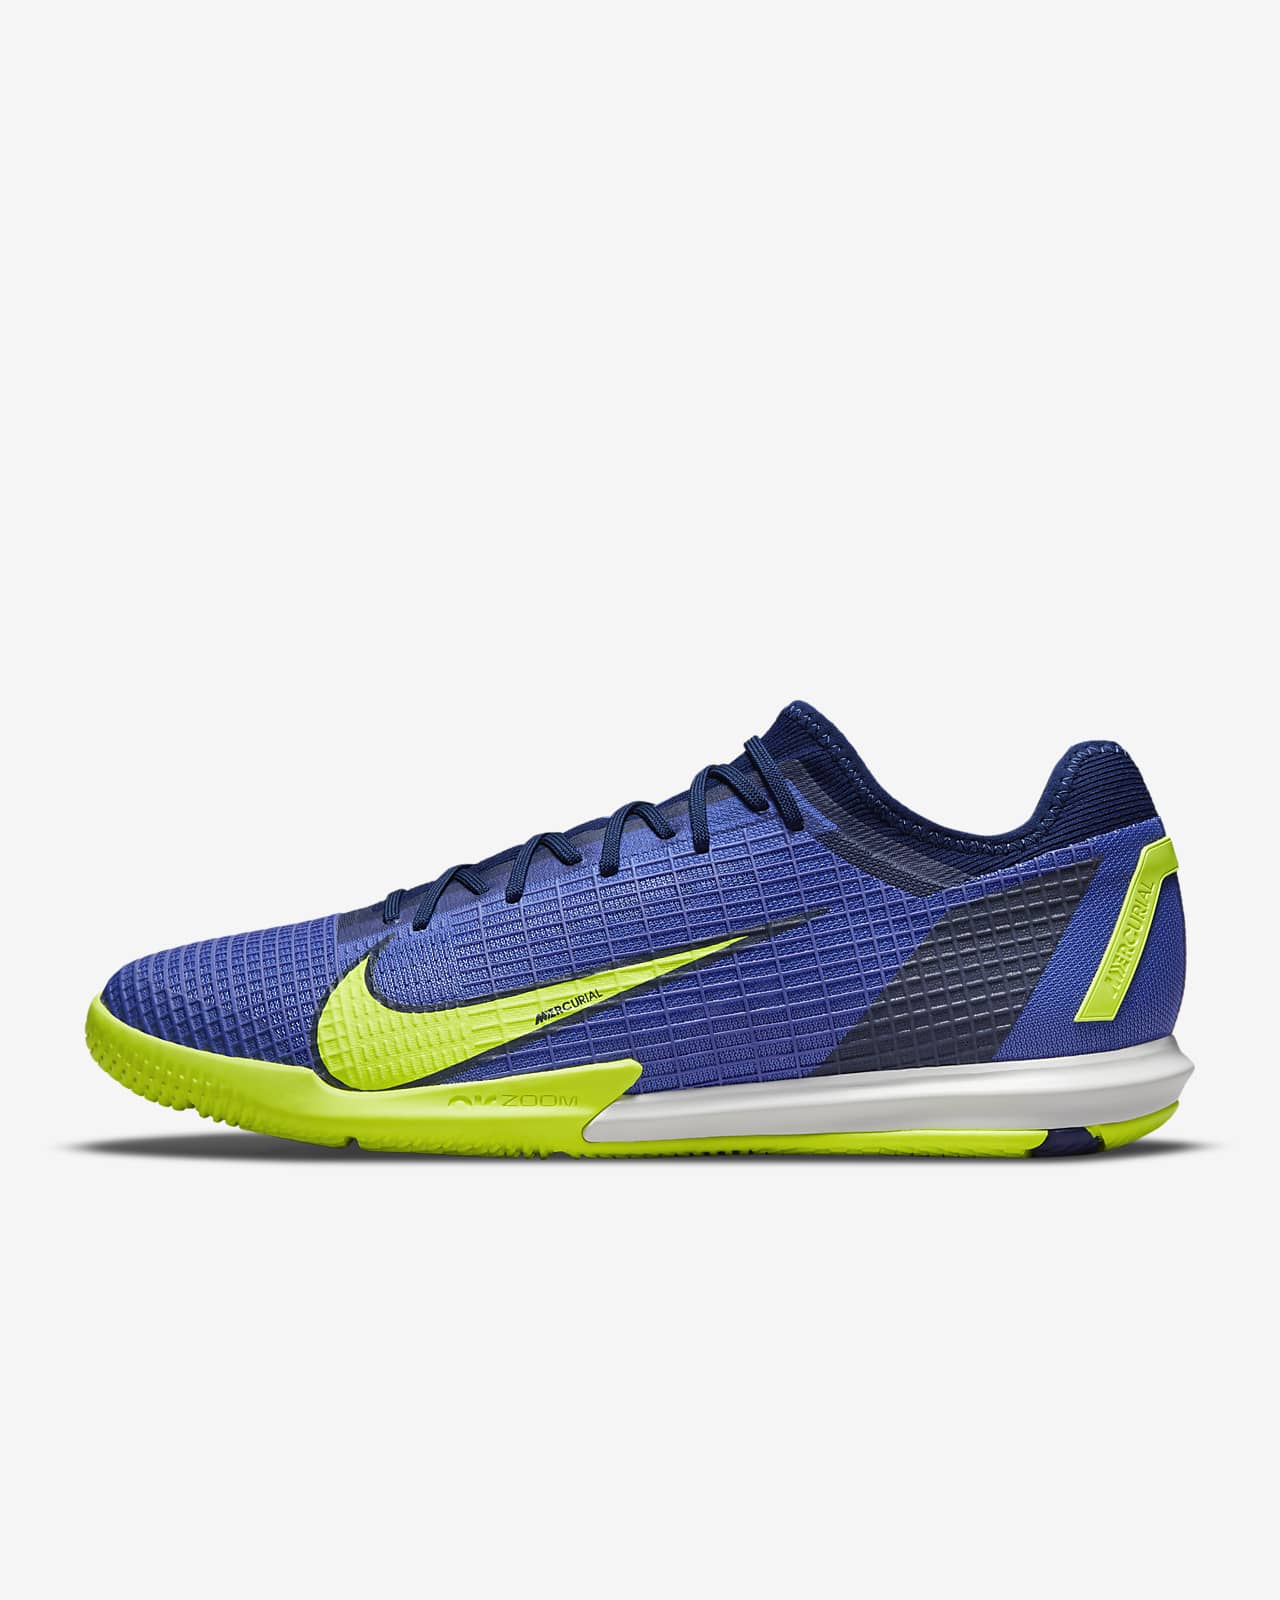 Nike Mercurial Vapor 14 Pro IC Indoor Court Football Shoe